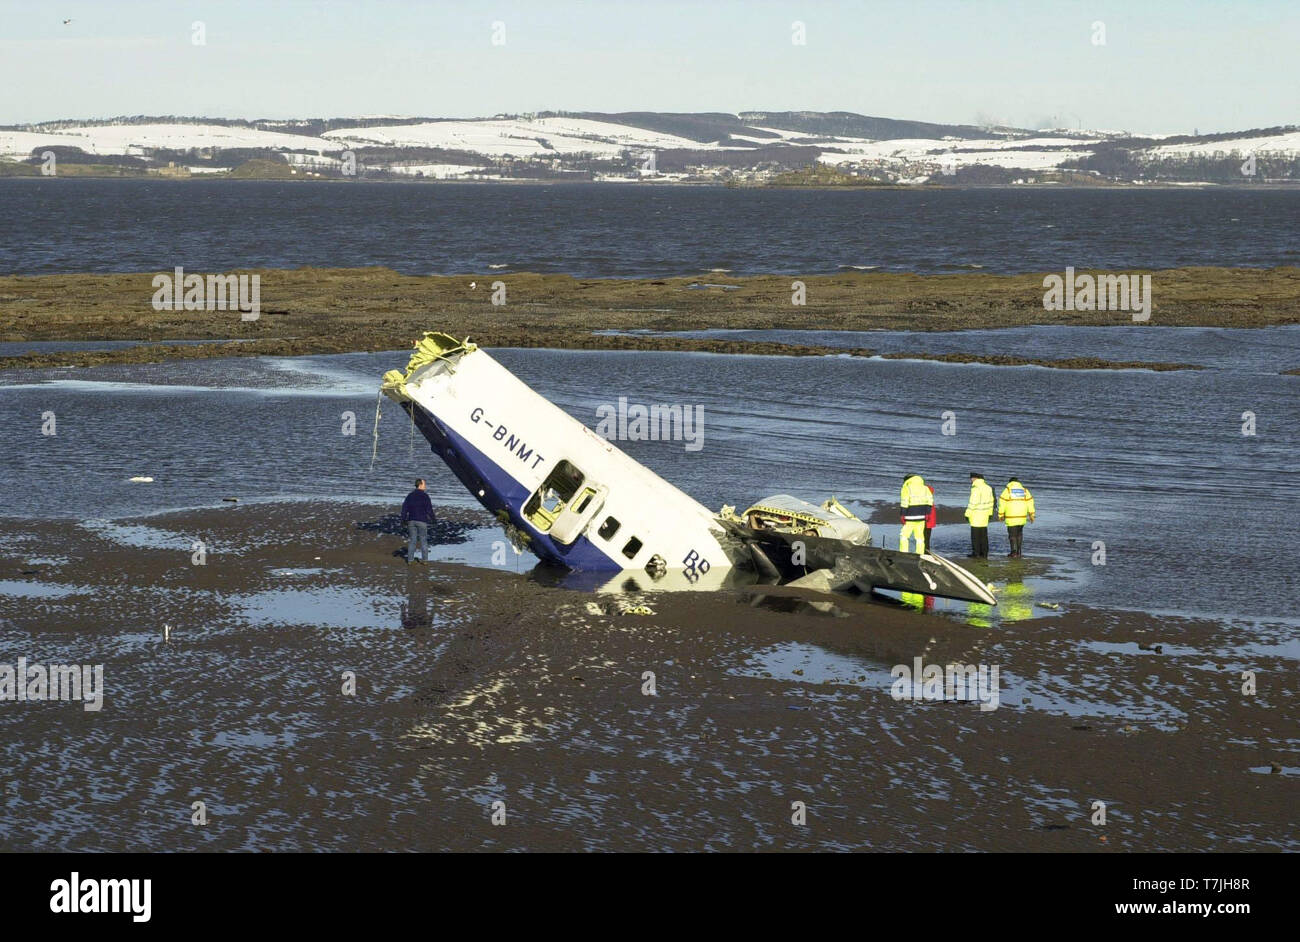 Gli investigatori di guardare il relitto della Loganair corto 360 aerei che si è schiantato nel Firth of Forth la scorsa notte dopo il decollo dall'aeroporto di Edimburgo, come la marea receeds questa mattina ( Mercoledì 28/2/01 ). Foto Stock